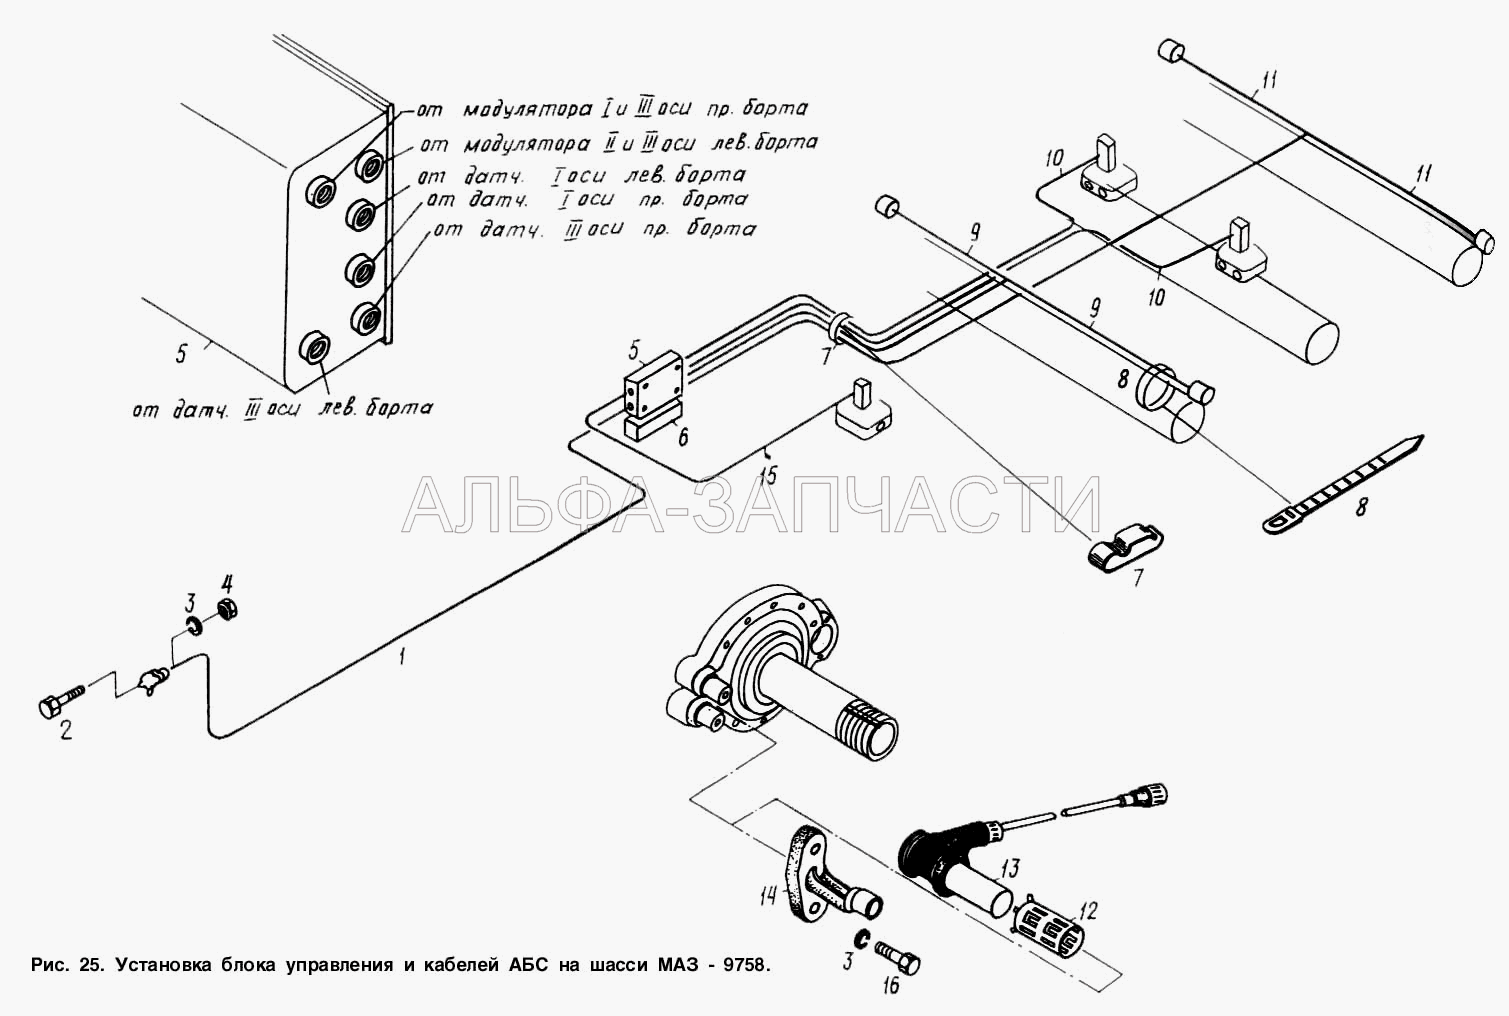 Установка блока управления и кабелей АБС на шасси МАЗ-9758 (54321-3538112 Кронштейн датчика) 